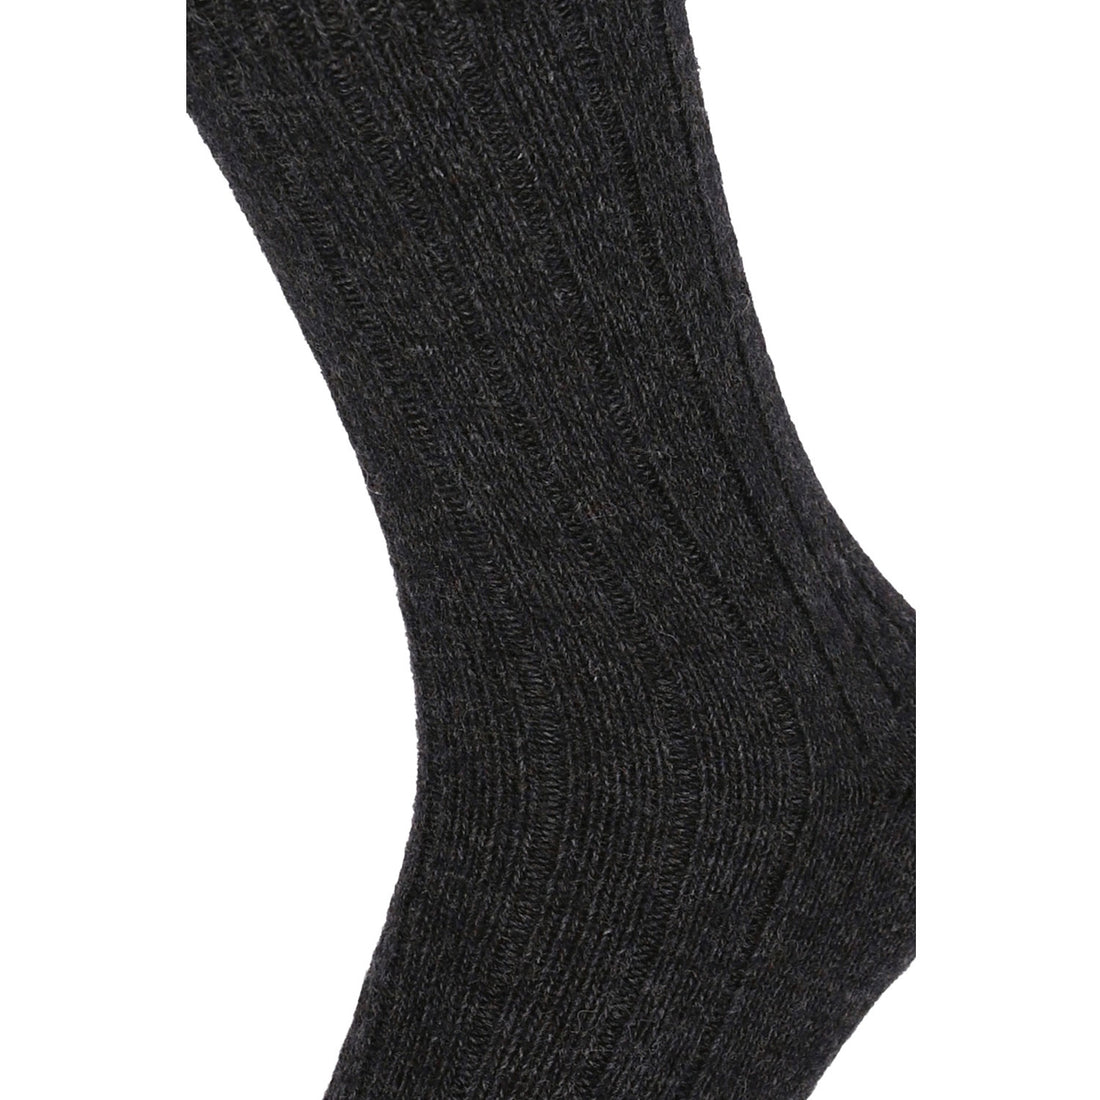 ChiliLifestyle Socken Winter Alpaka Wolle Damen Herren Warm 2 Paar